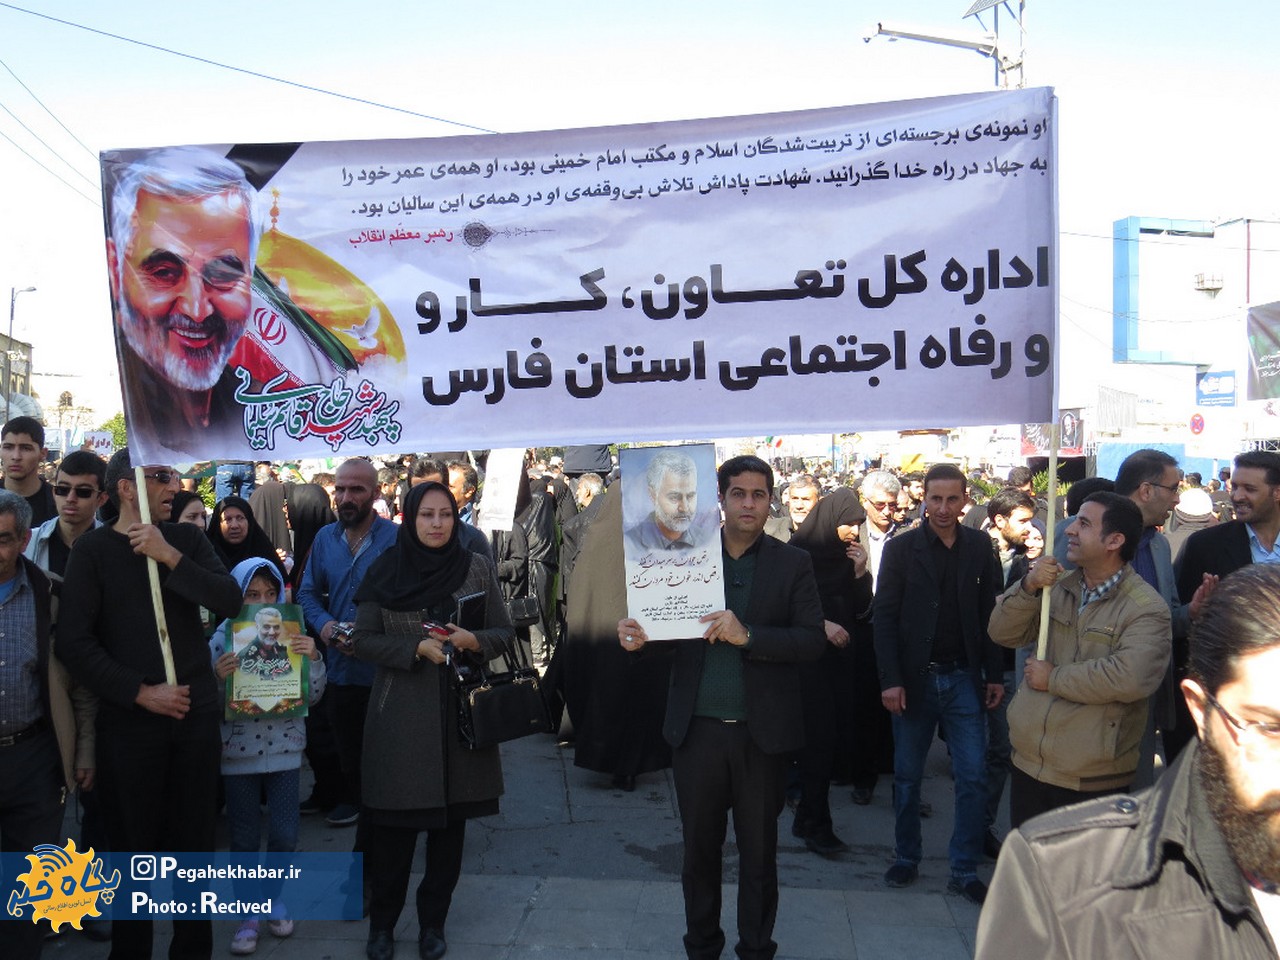 حضور مدیرکل و کارکنان اداره کل تعاون، کار و رفاه اجتماعی فارس در اجتماع بزرگداشت شهید سلیمانی در شیراز